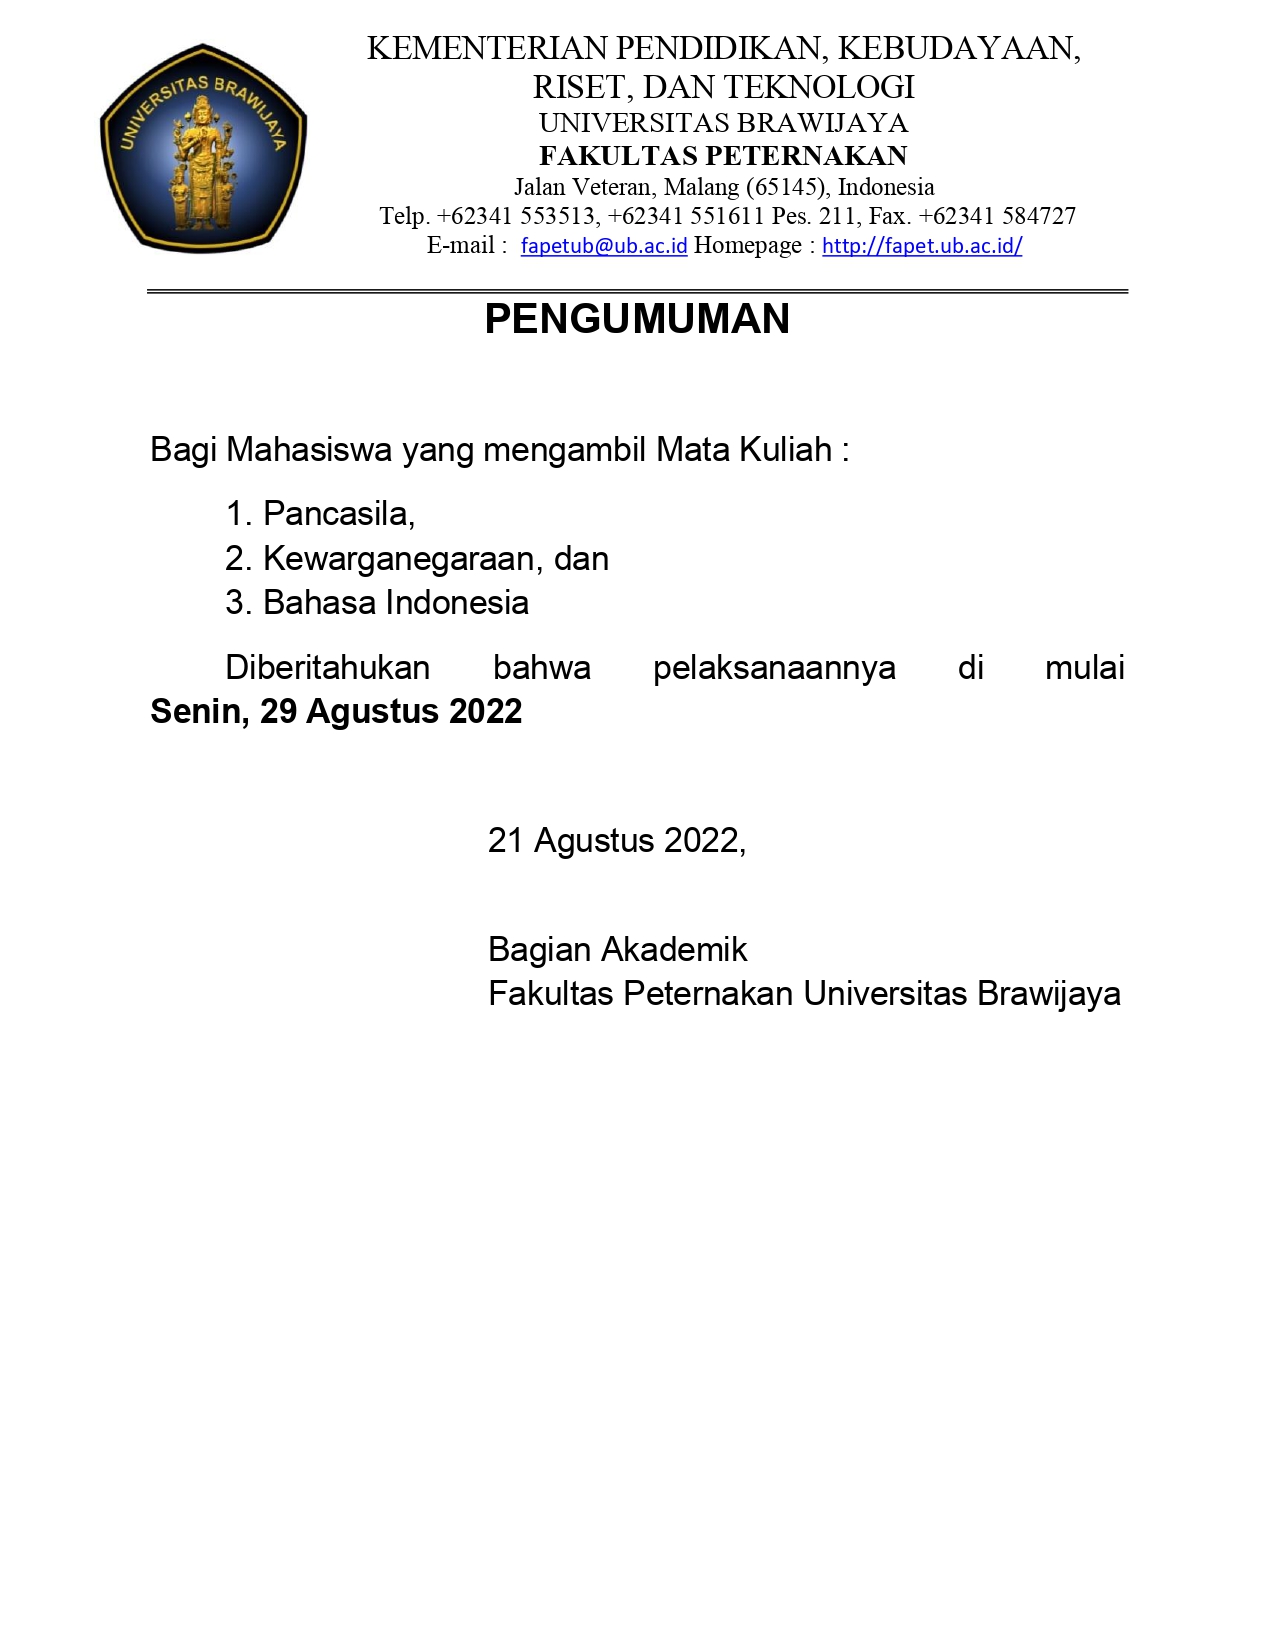 Pelaksanaan Perkuliahan MK Pancasila, Kewarganegaraan, dan Bahasa Indonesia